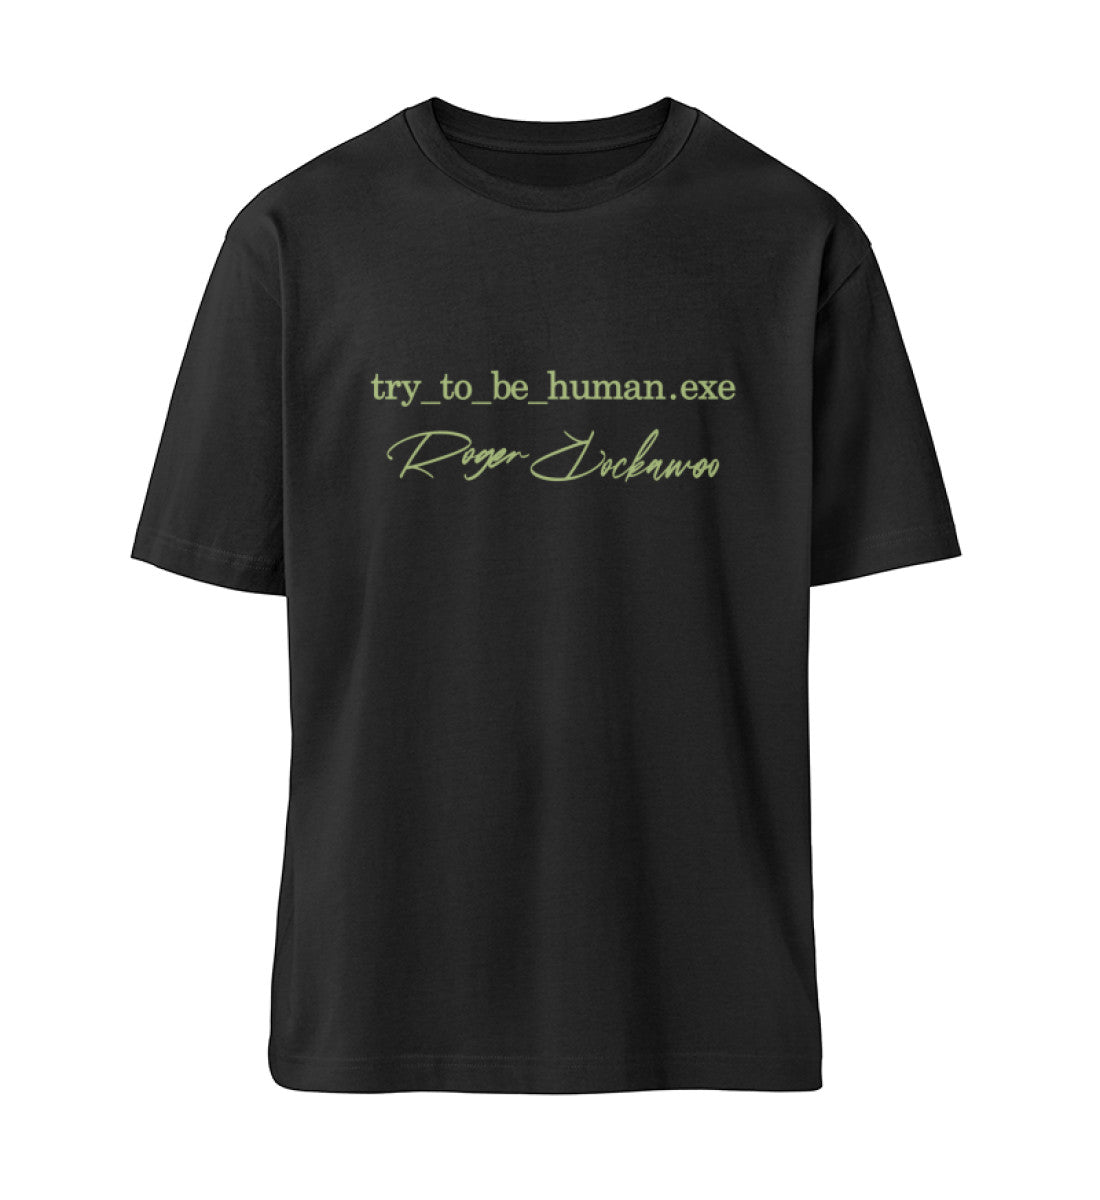 Schwarzes T-Shirt Unisex Relaxed Fit für Frauen und Männer bedruckt mit dem Design der Roger Rockawoo Kollektion Try To Be Human